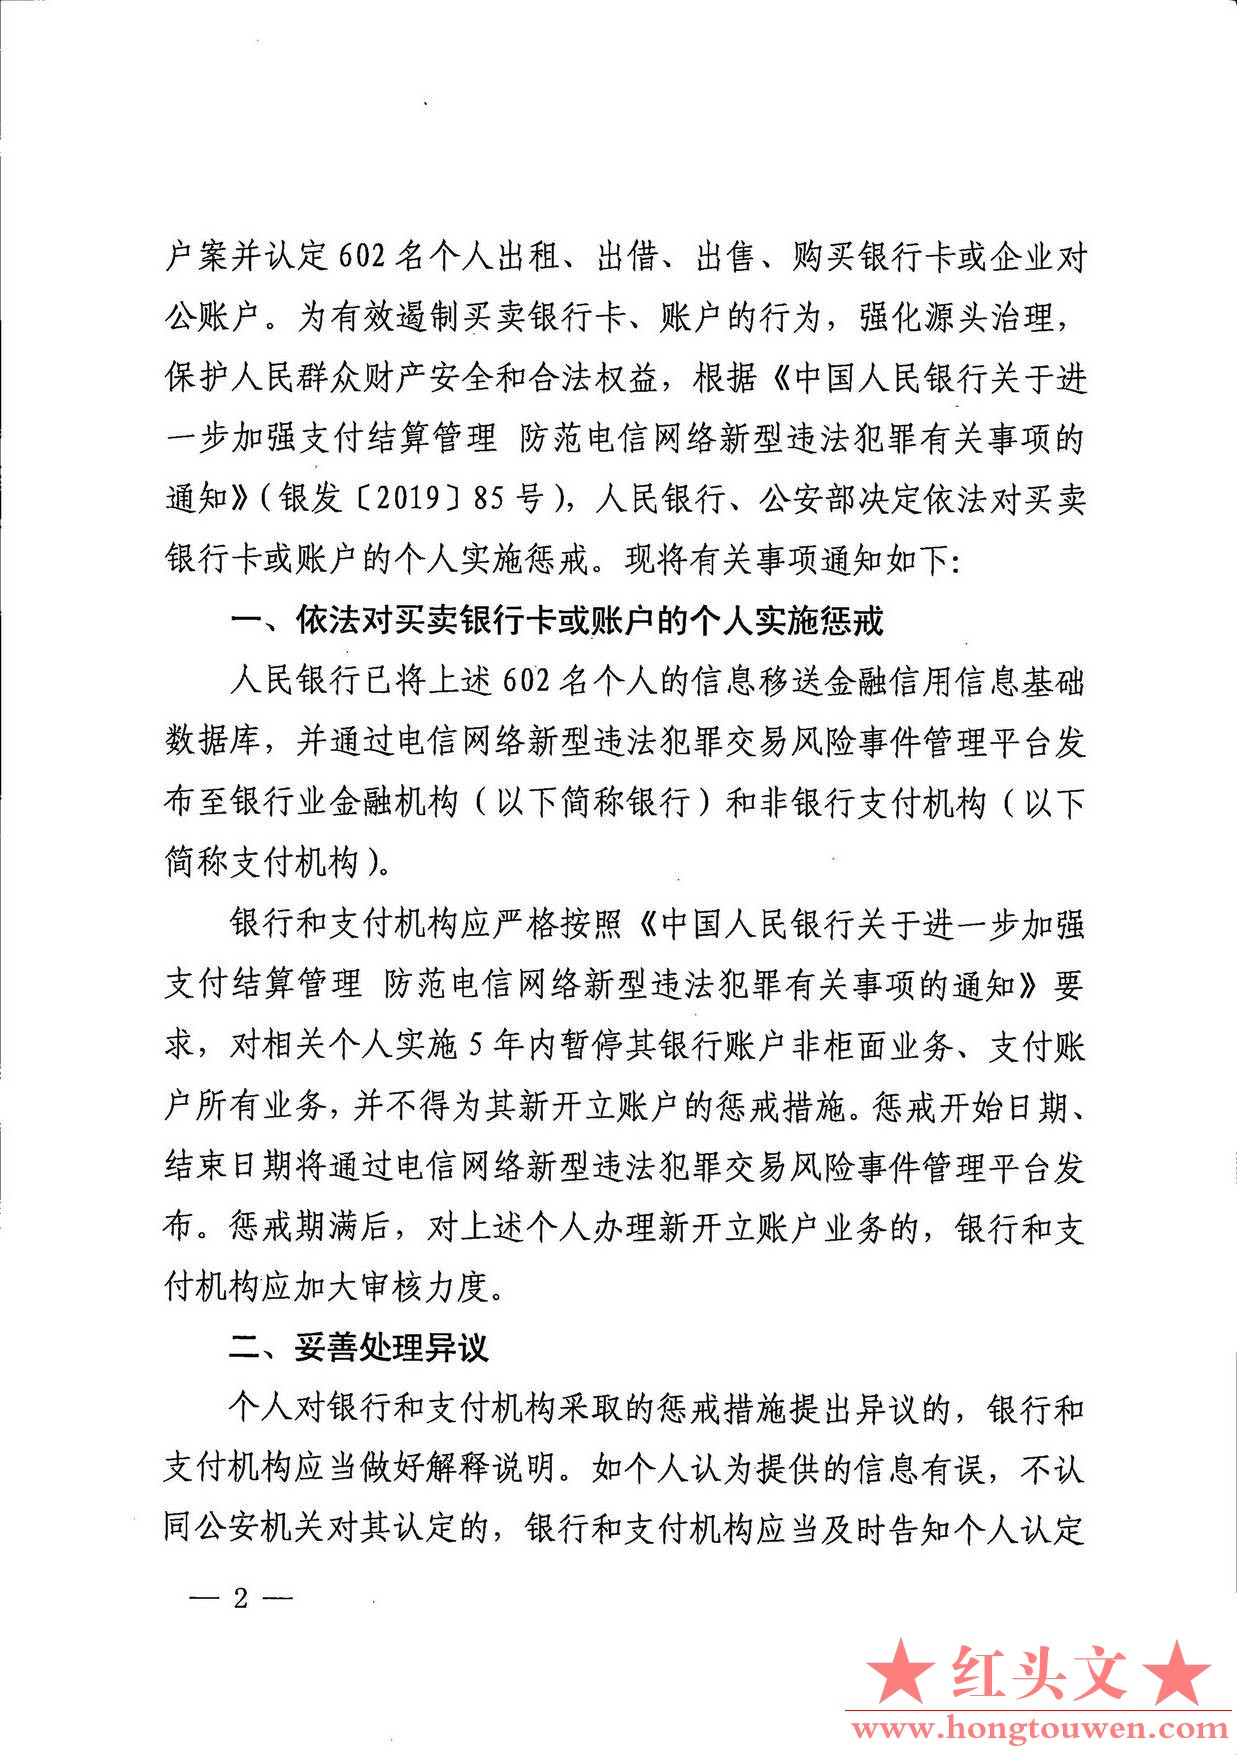 银发[2019]304号-中国人民银行 公安部对买卖银行卡或账户的个人实施惩戒的通知_页面_2.jpg